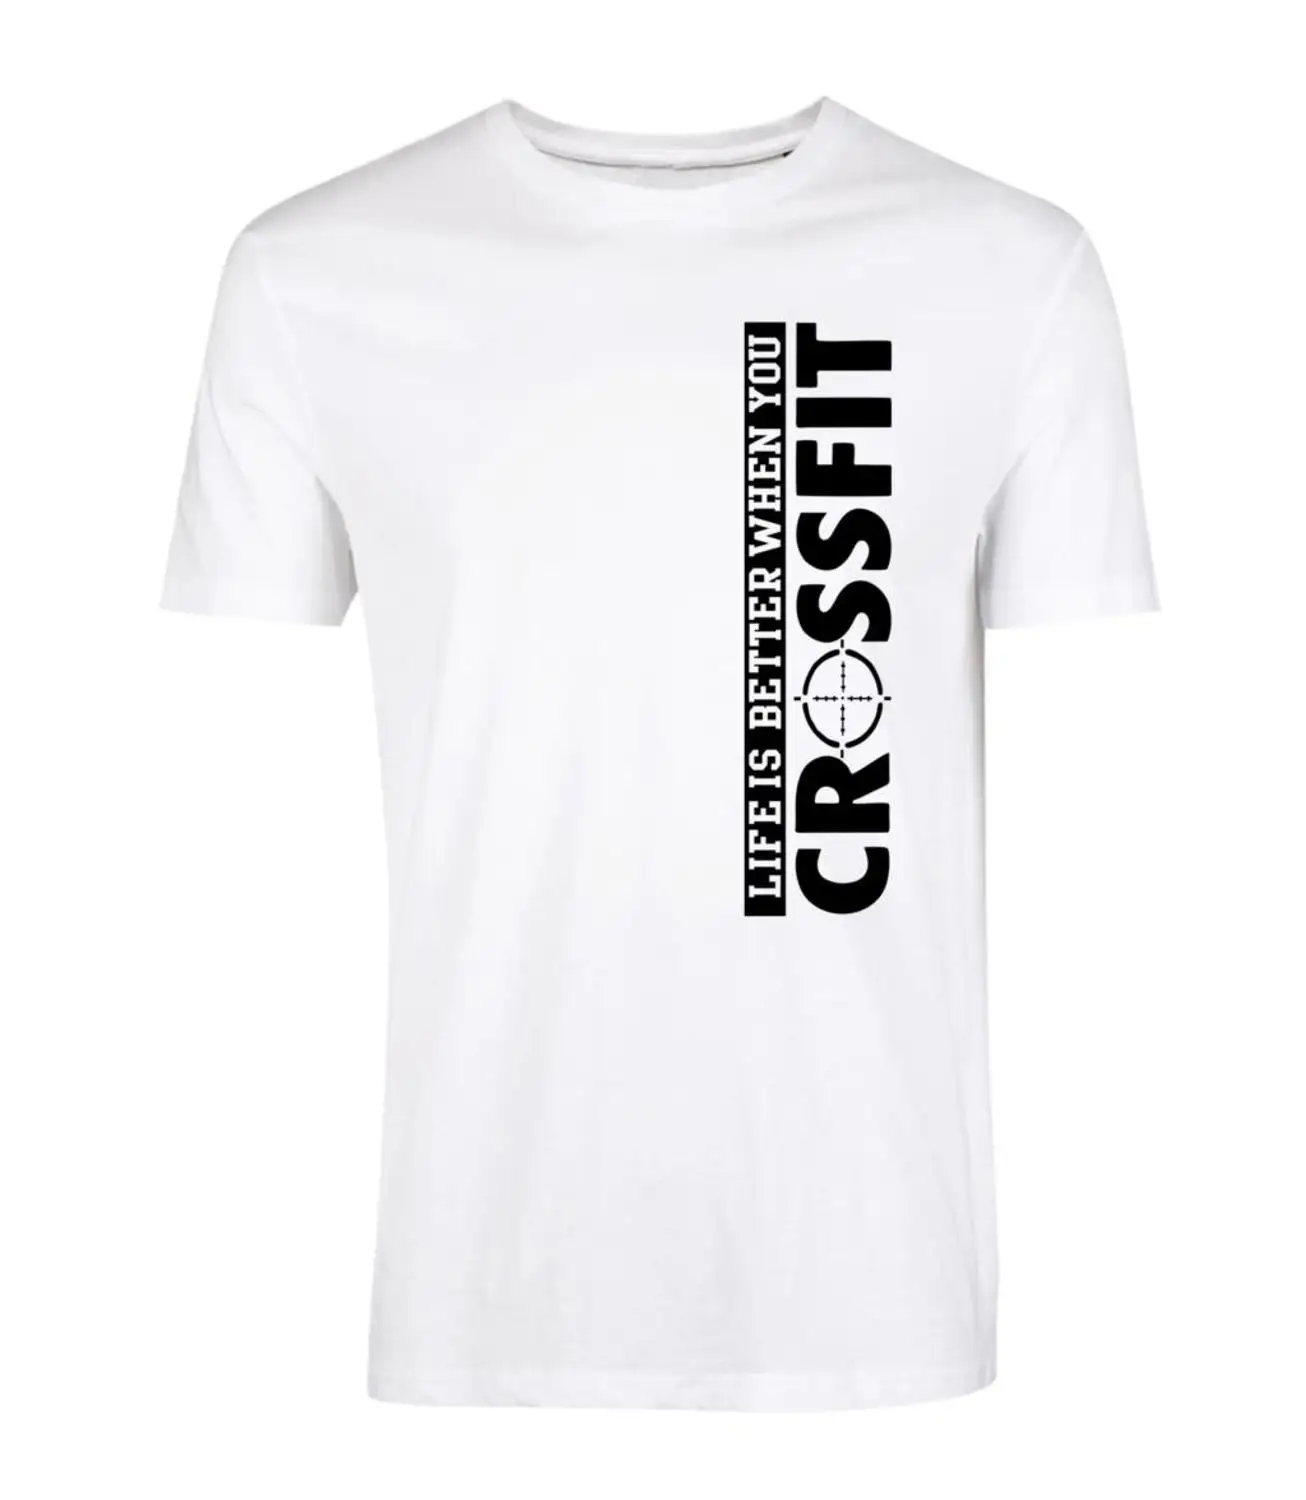 Футболка с надписью «Nouvelle Arrivee Lettre Imprimer», футболка с надписью «Vie Est Mieux Quand Vous Crossfit Dete Streetwear», футболки Hommes Manches Court - Цвет: white black